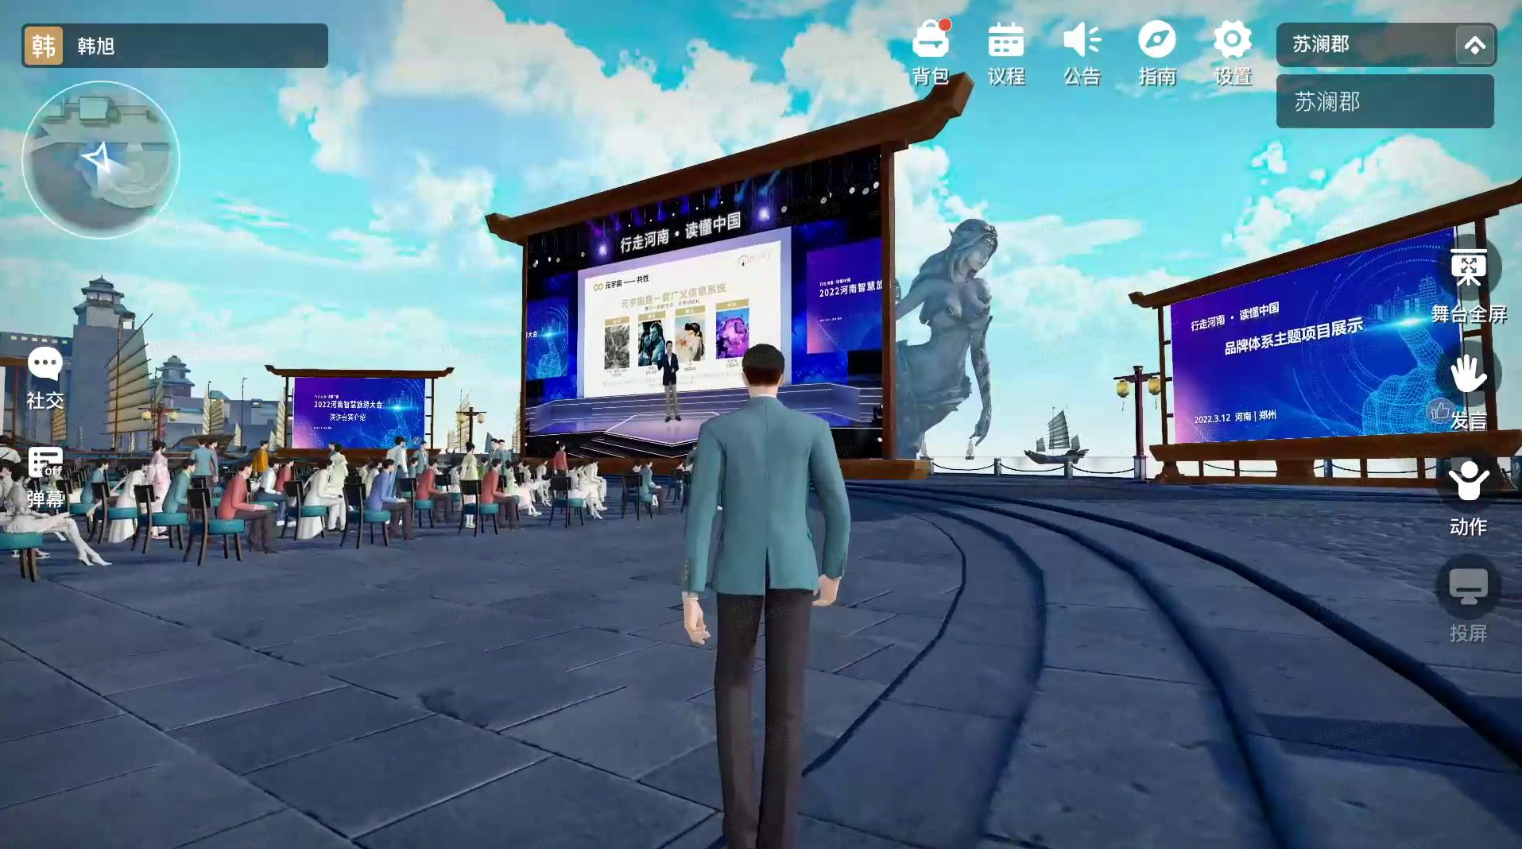 这是一张游戏内截图，展示一个角色背对镜头，面向带有大屏幕的舞台和观众区，环境设计具有现代和传统结合的风格。